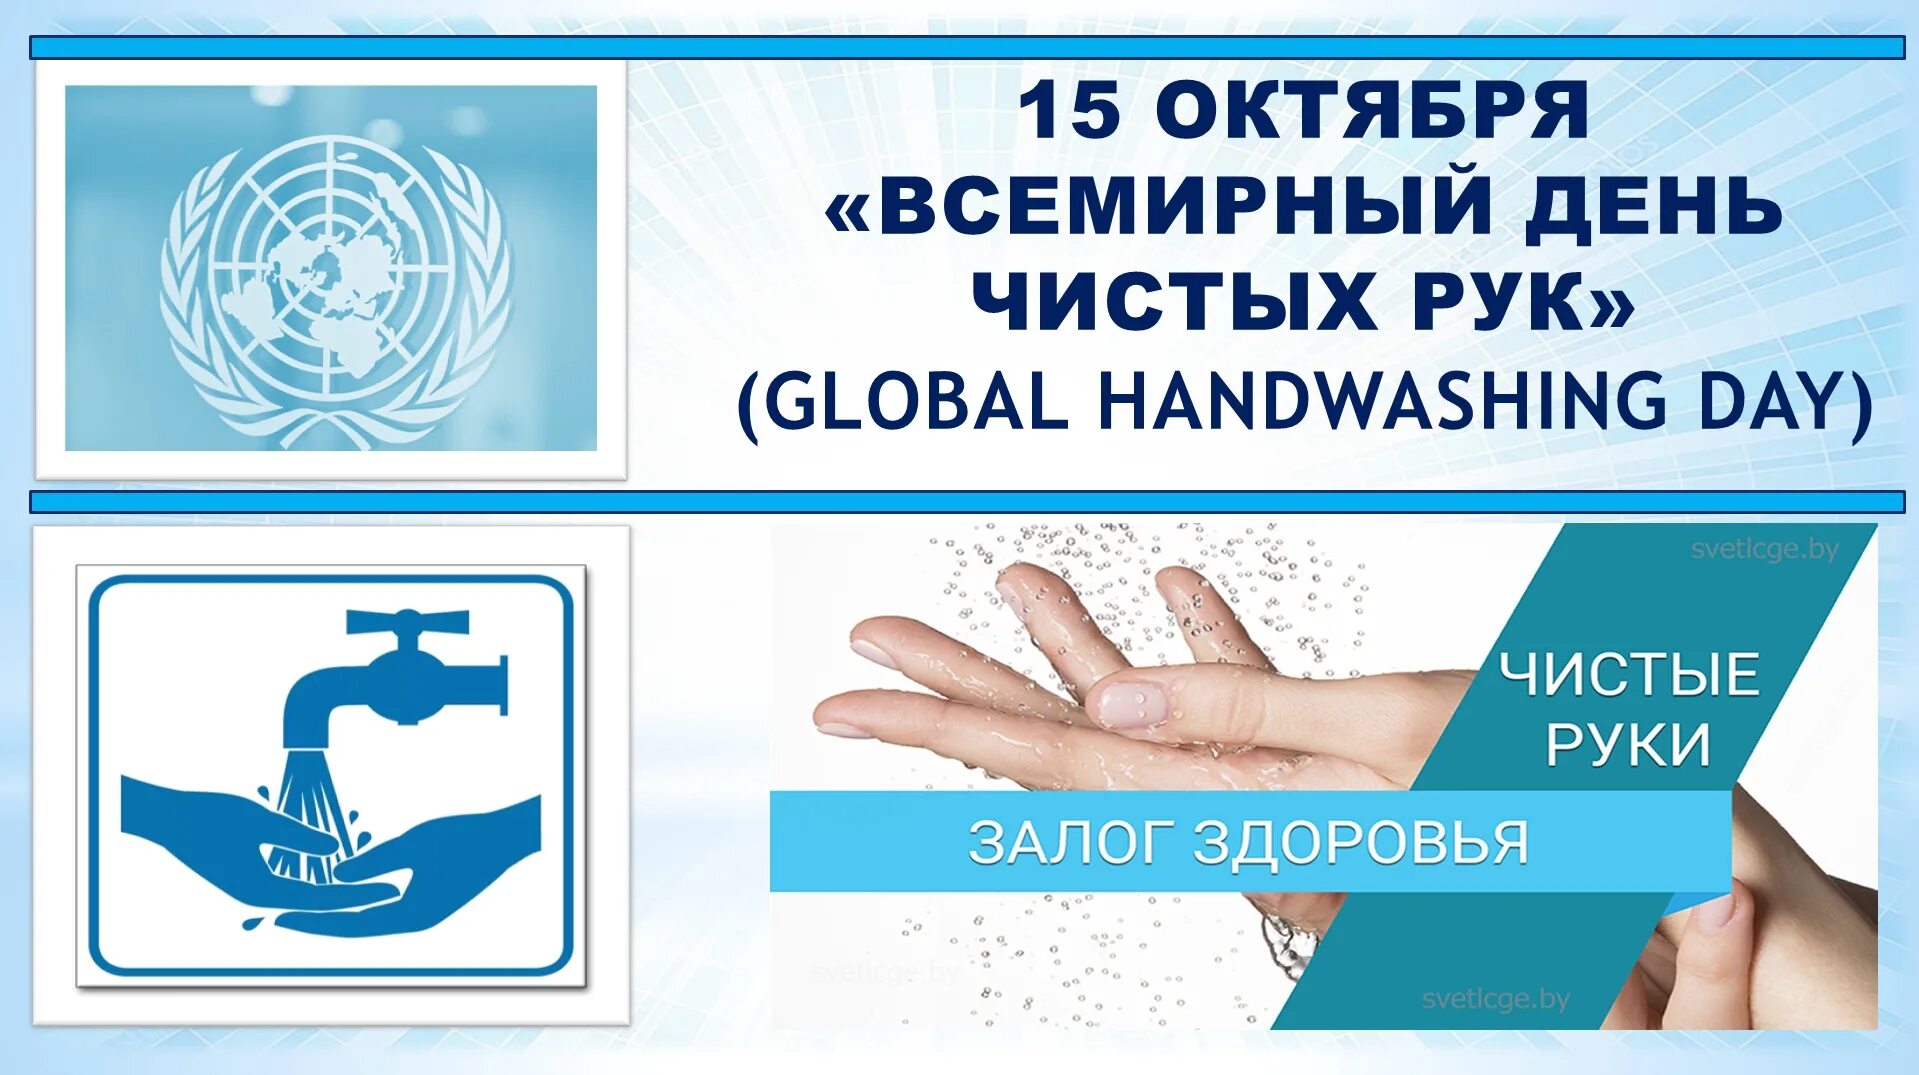 Рук 15 минут с. Всемирный день чистых рук. Всемирный день мытья рук. День чистых рук 15 октября. Логотип Всемирный день чистых рук.